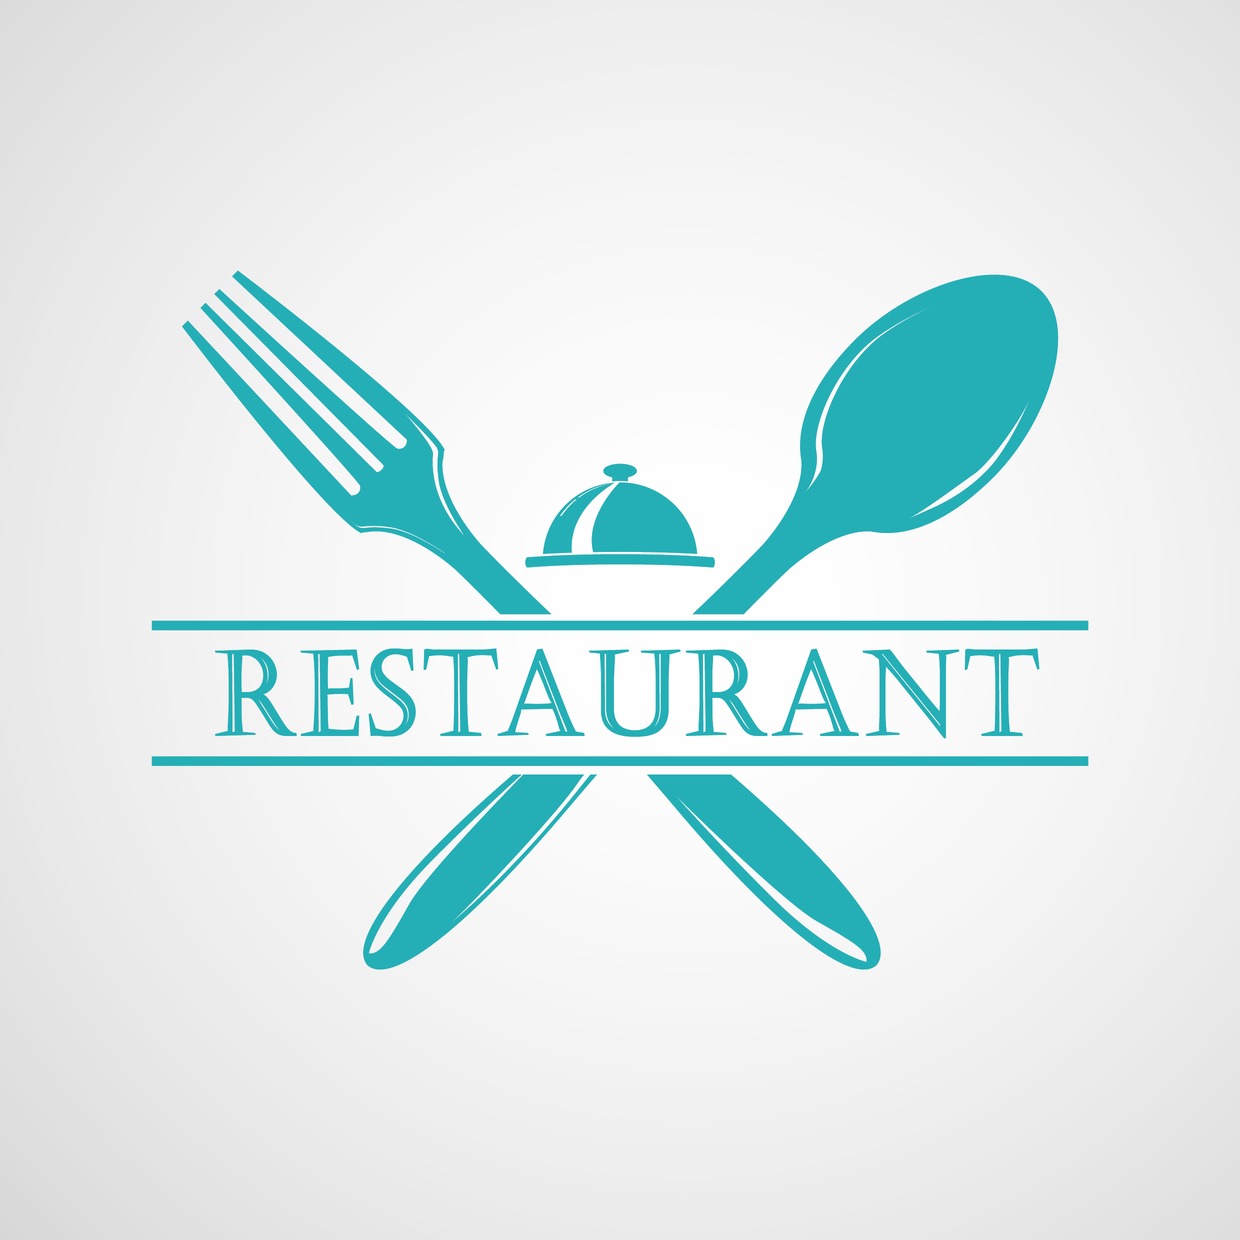 Restaurant Business Plan Samples